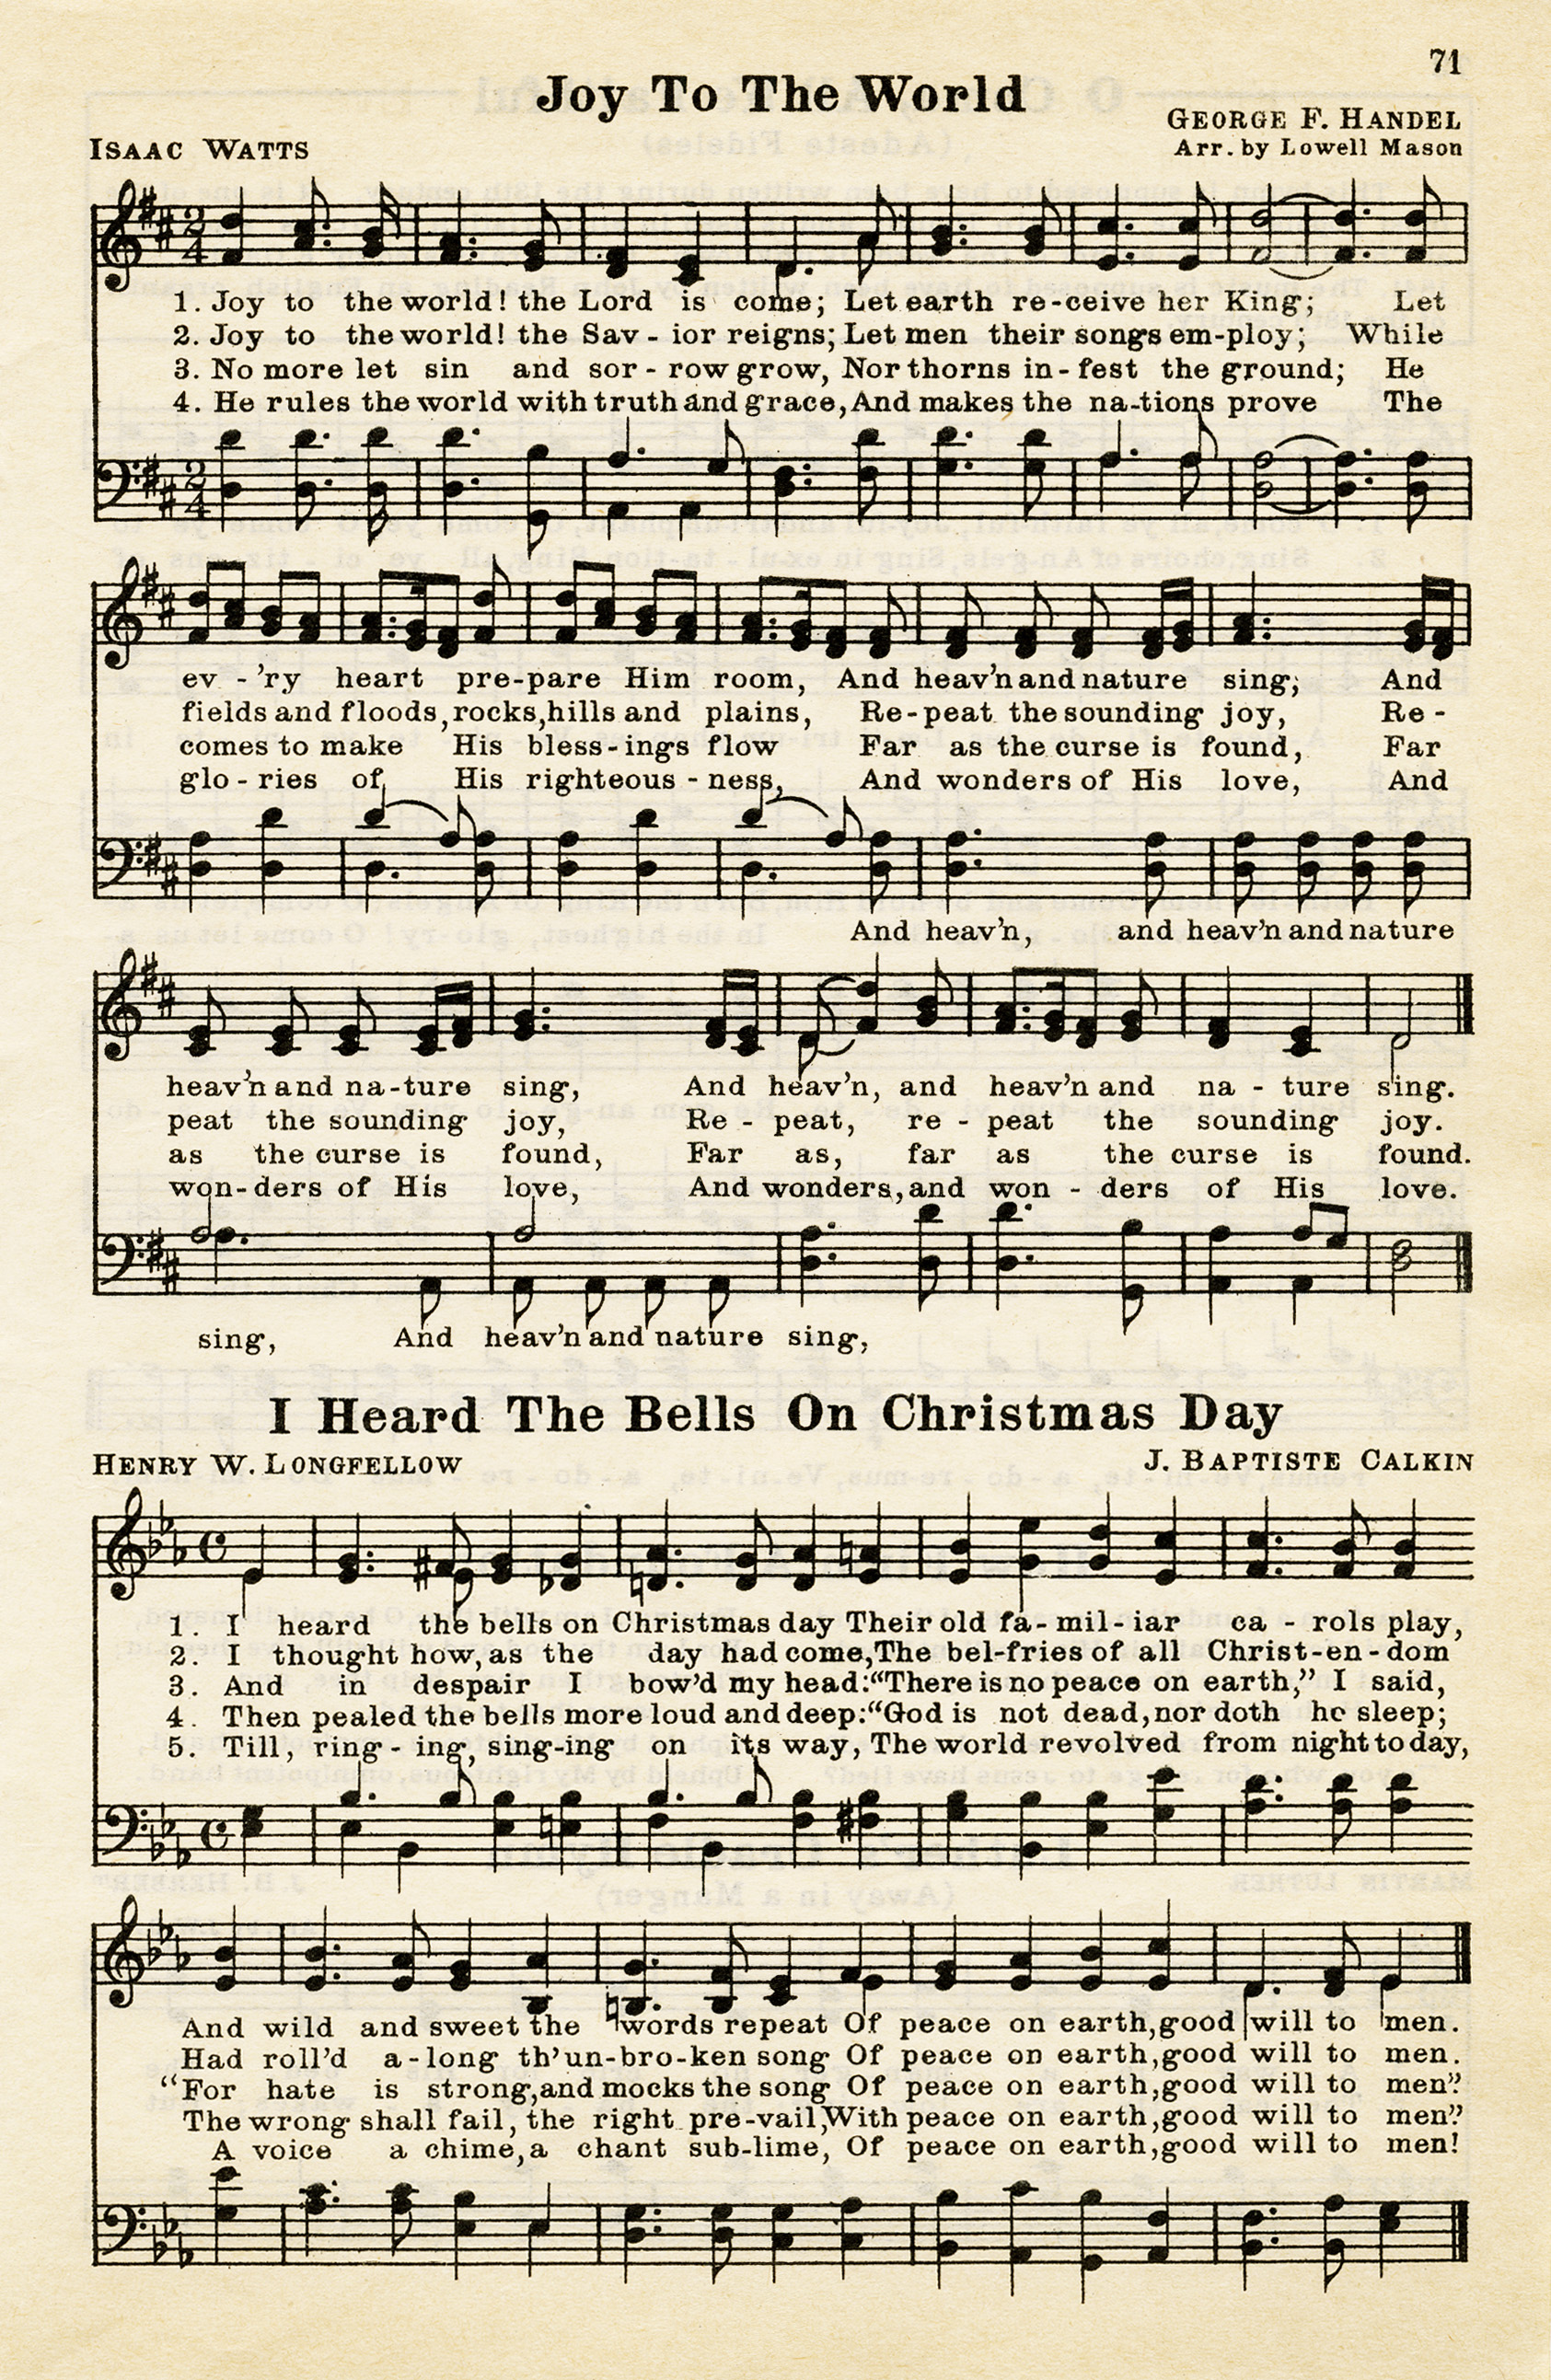 Free Vintage Image Christmas Hymns | Old Design Shop Blog